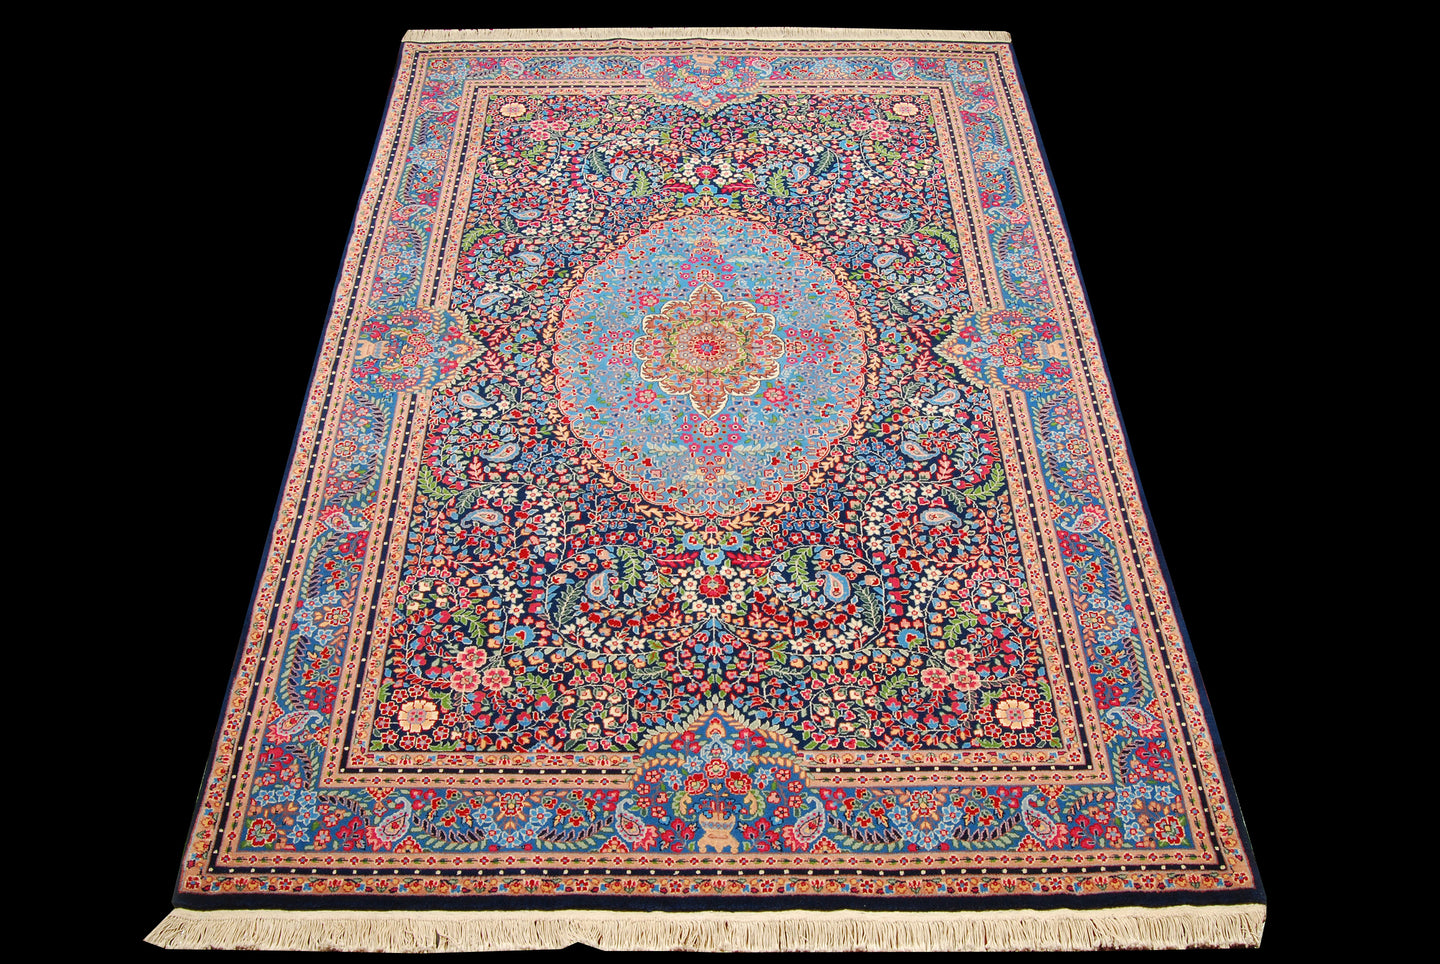 Tappeto Carpet Tapis Teppich Alfombra Rug Berkana (Hand Made) CM 285x185